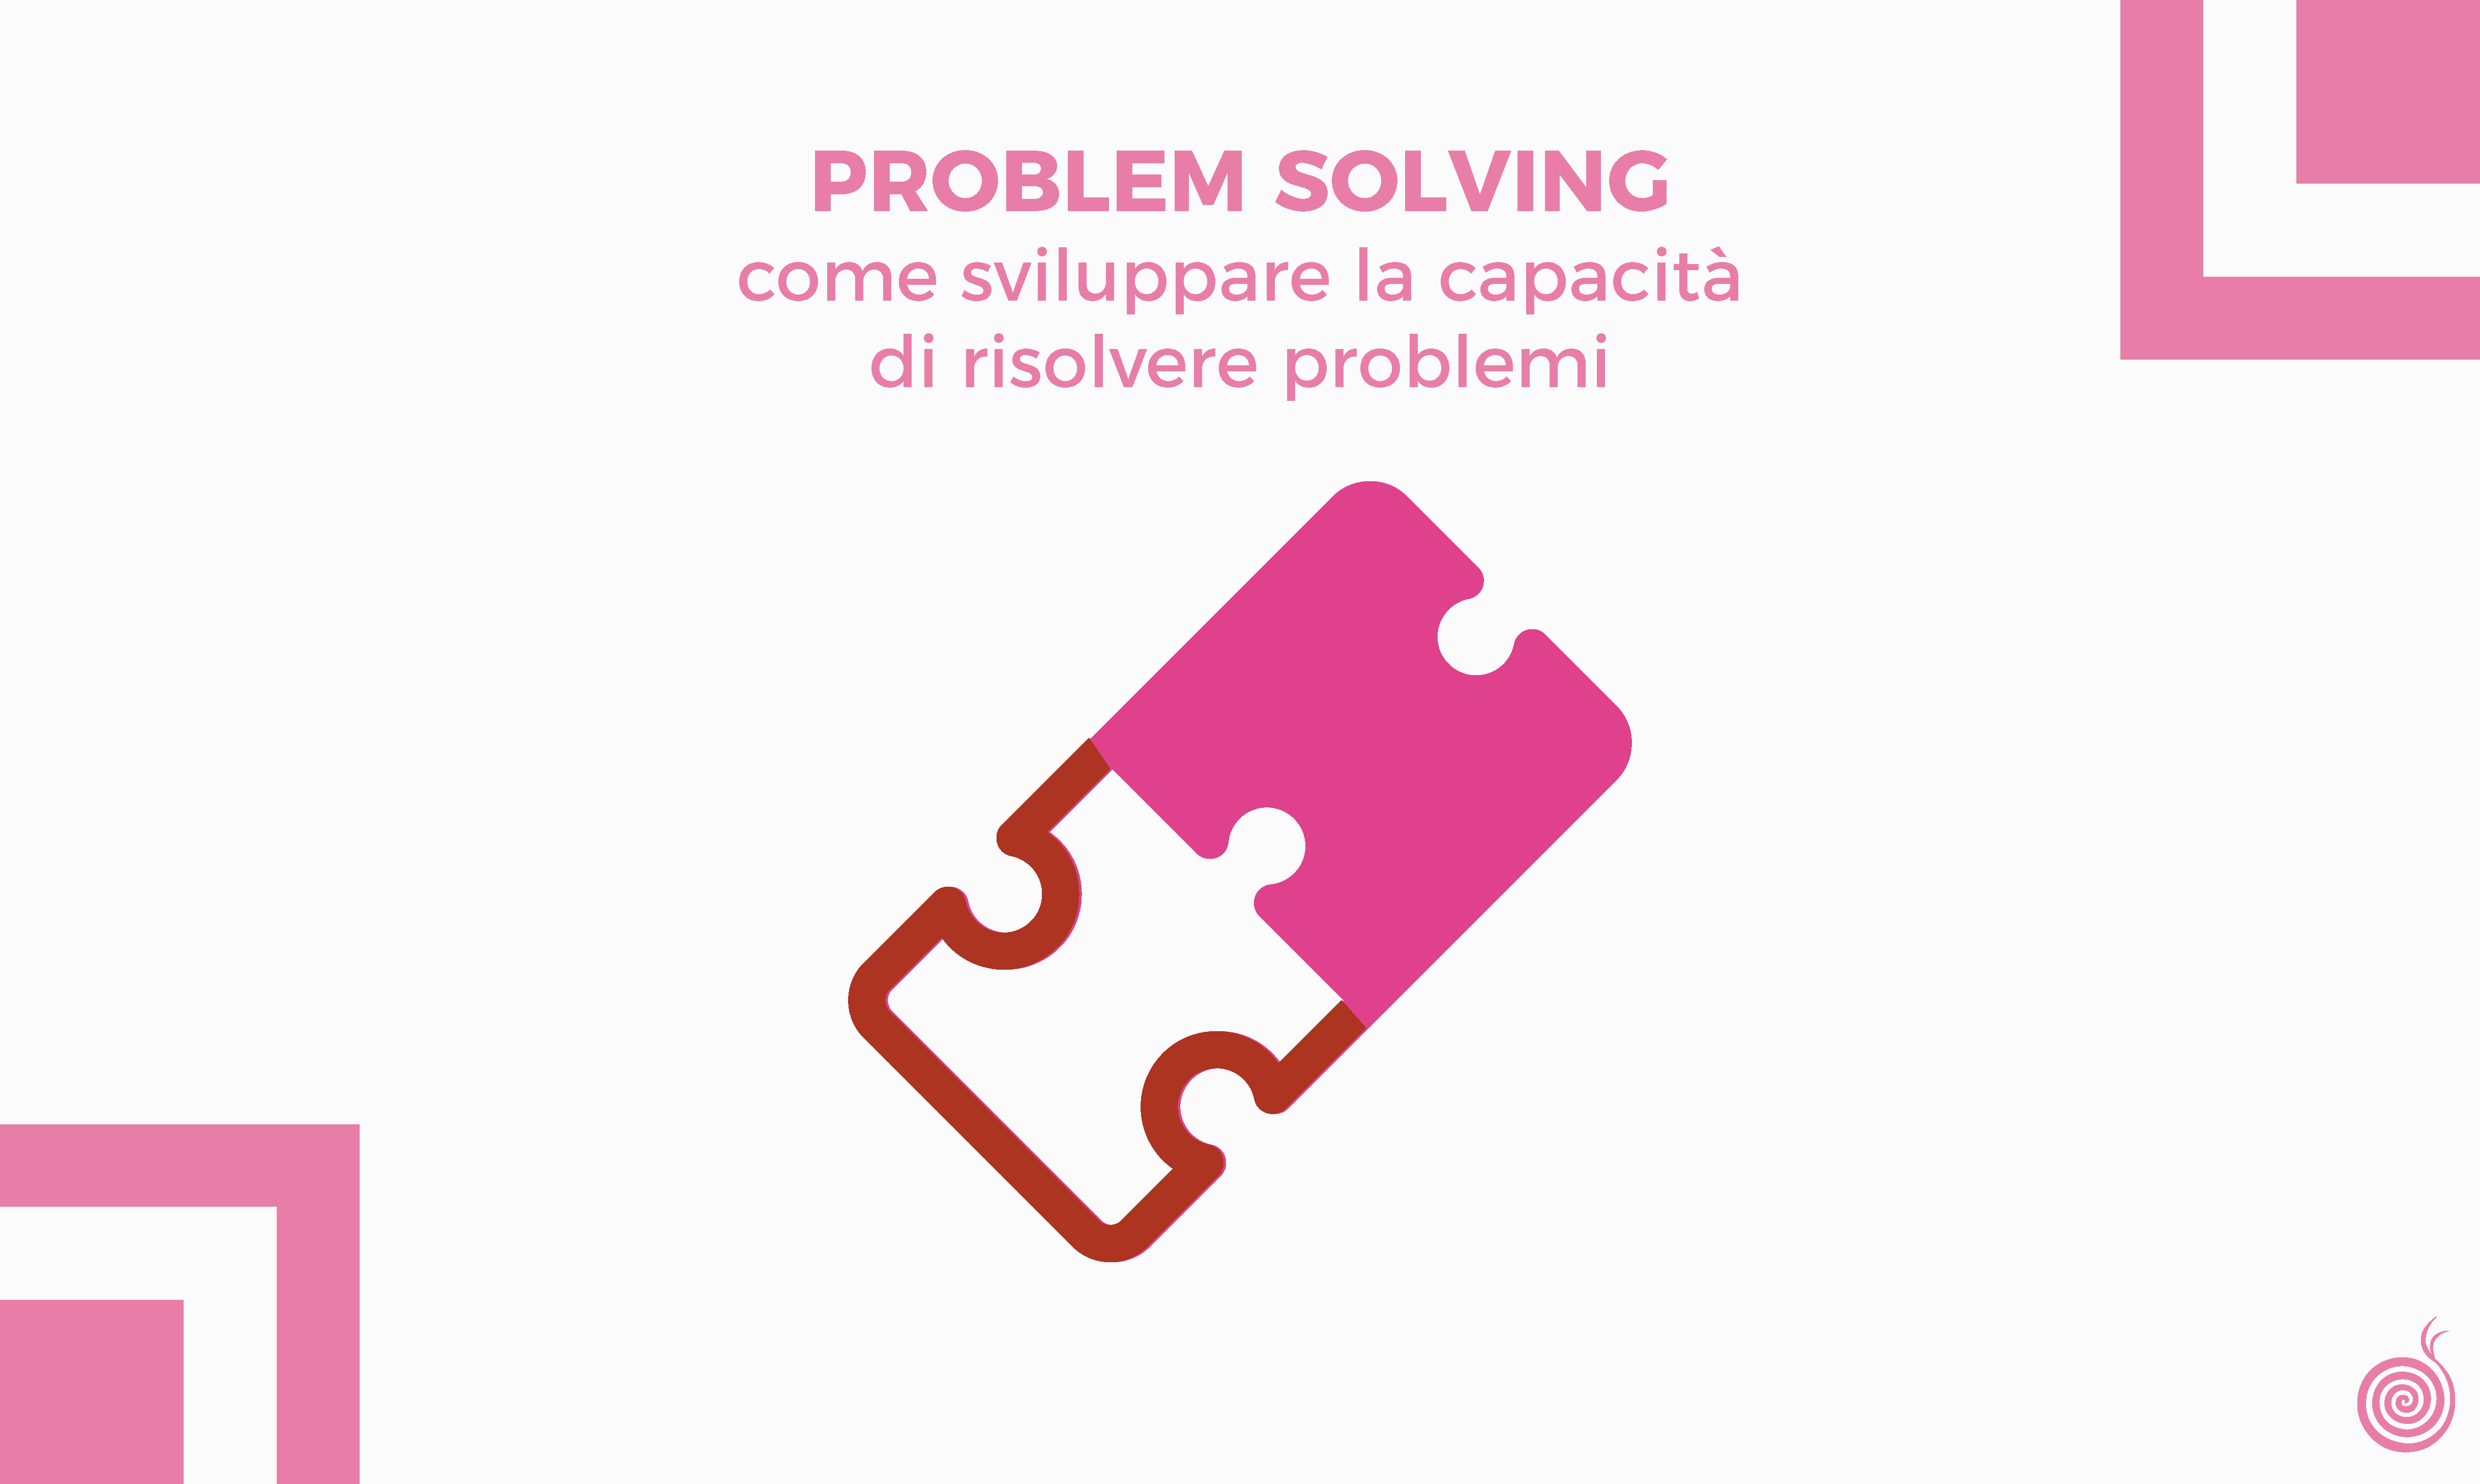 Problem solving: come sviluppare la capacità di risolvere problemi